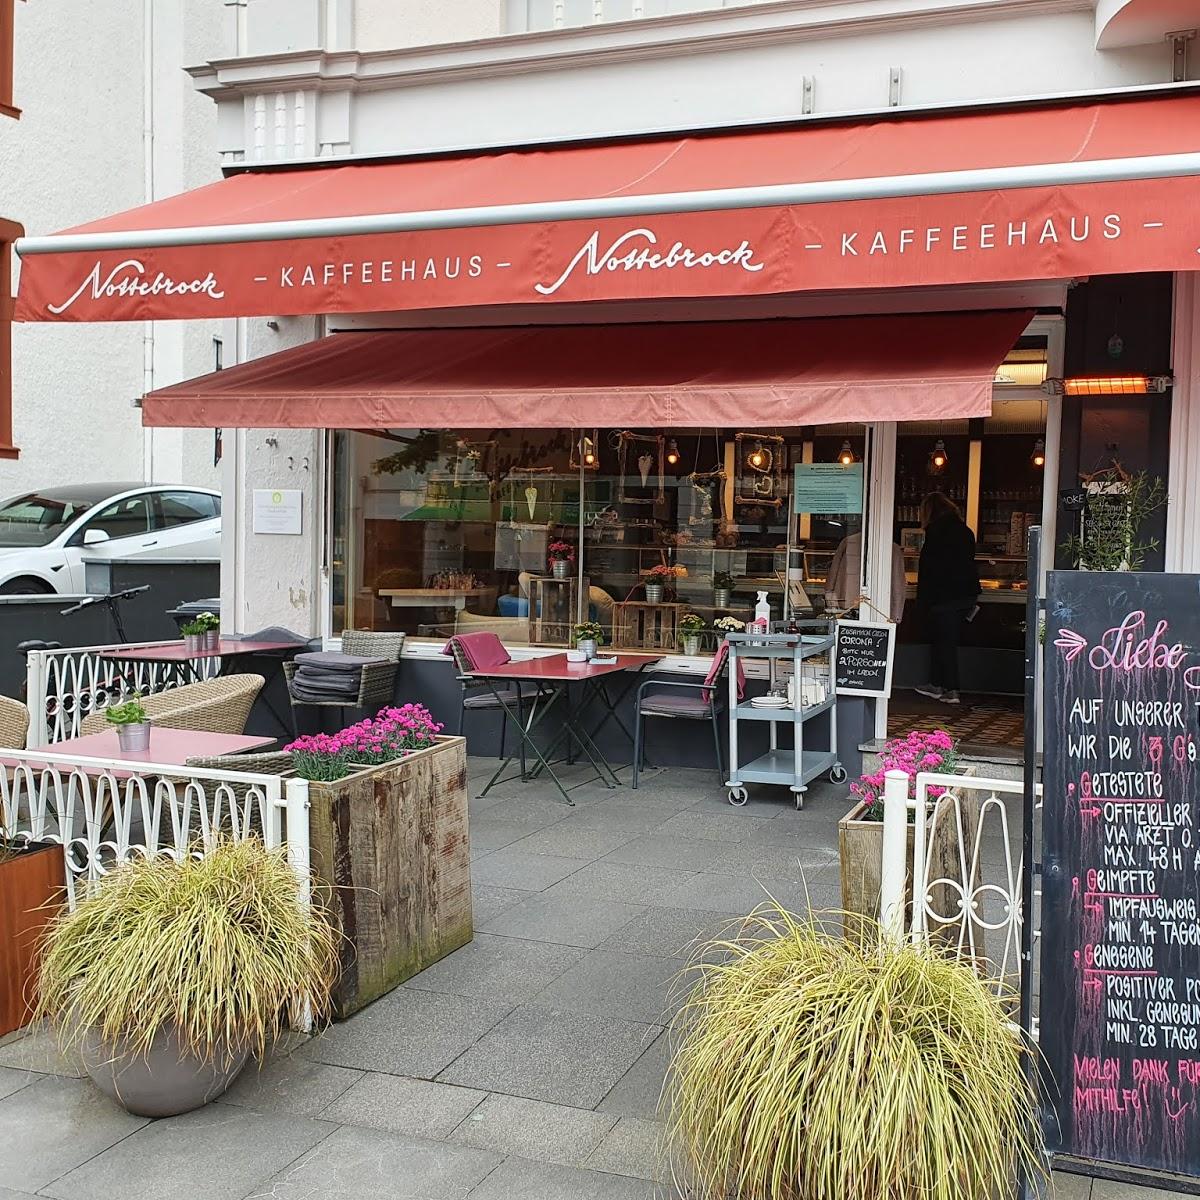 Restaurant "Café Nottebrock" in Bad Honnef